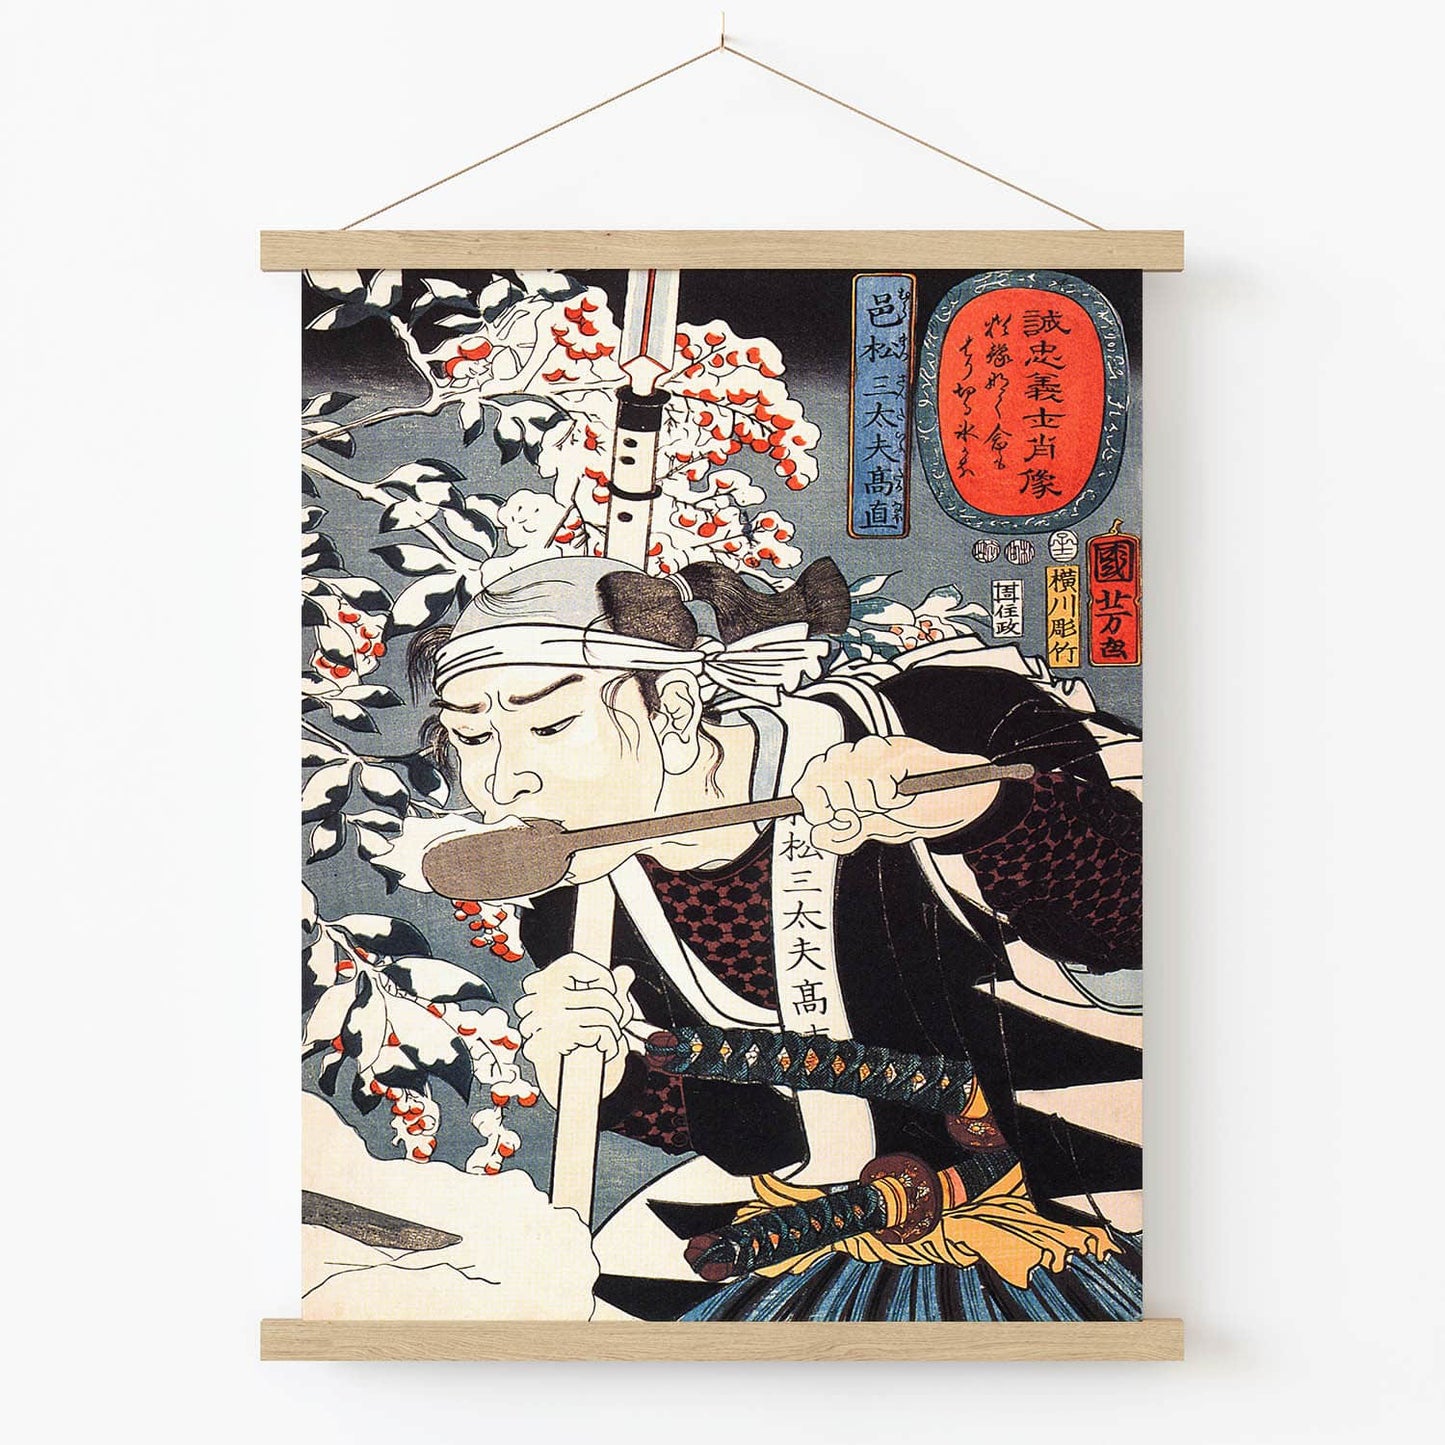 Japanese Warrior Art Print in Wood Hanger Frame on Wall